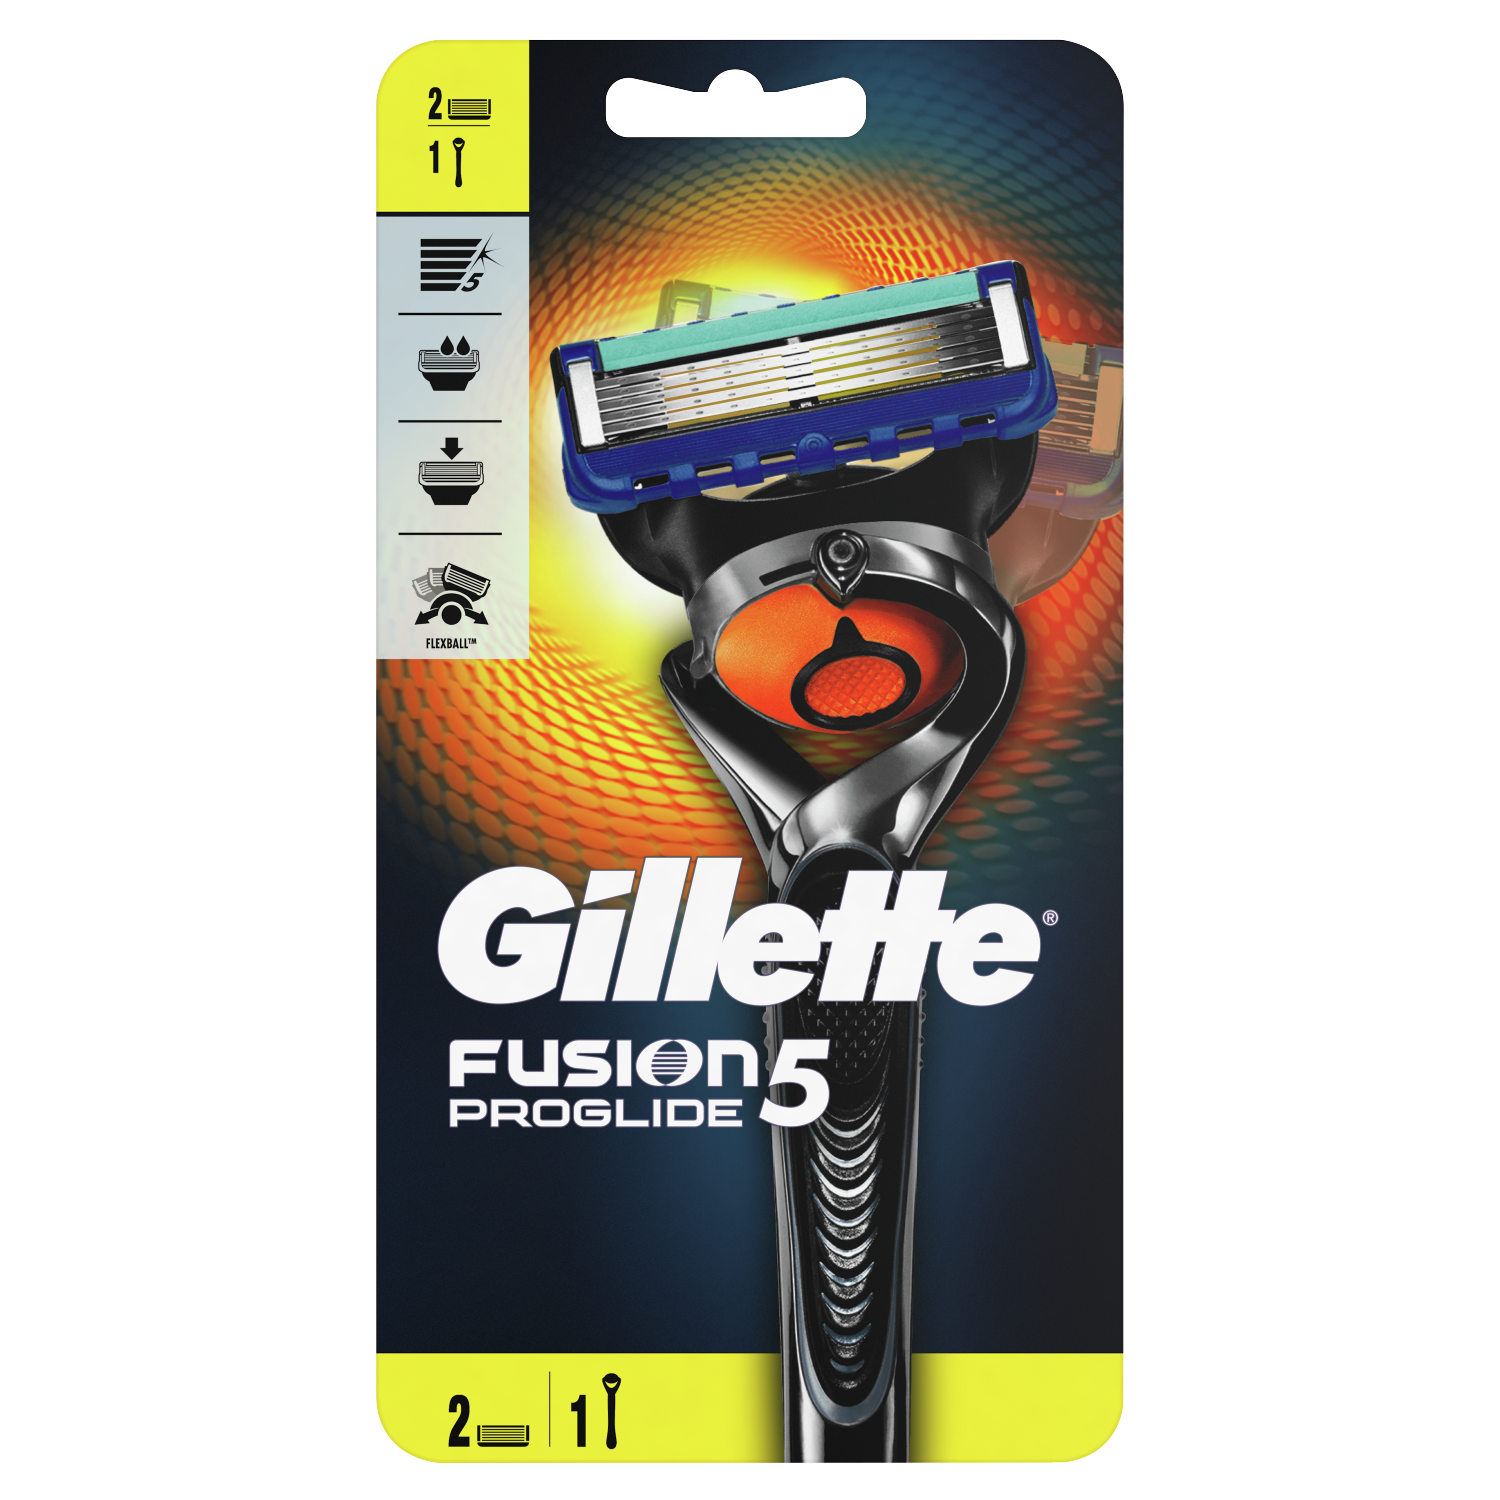 Gillette Fusion5 ProGlide maszynka do golenia męska, 1 szt. + wkłady 2  szt./1 opak. | hebe.pl